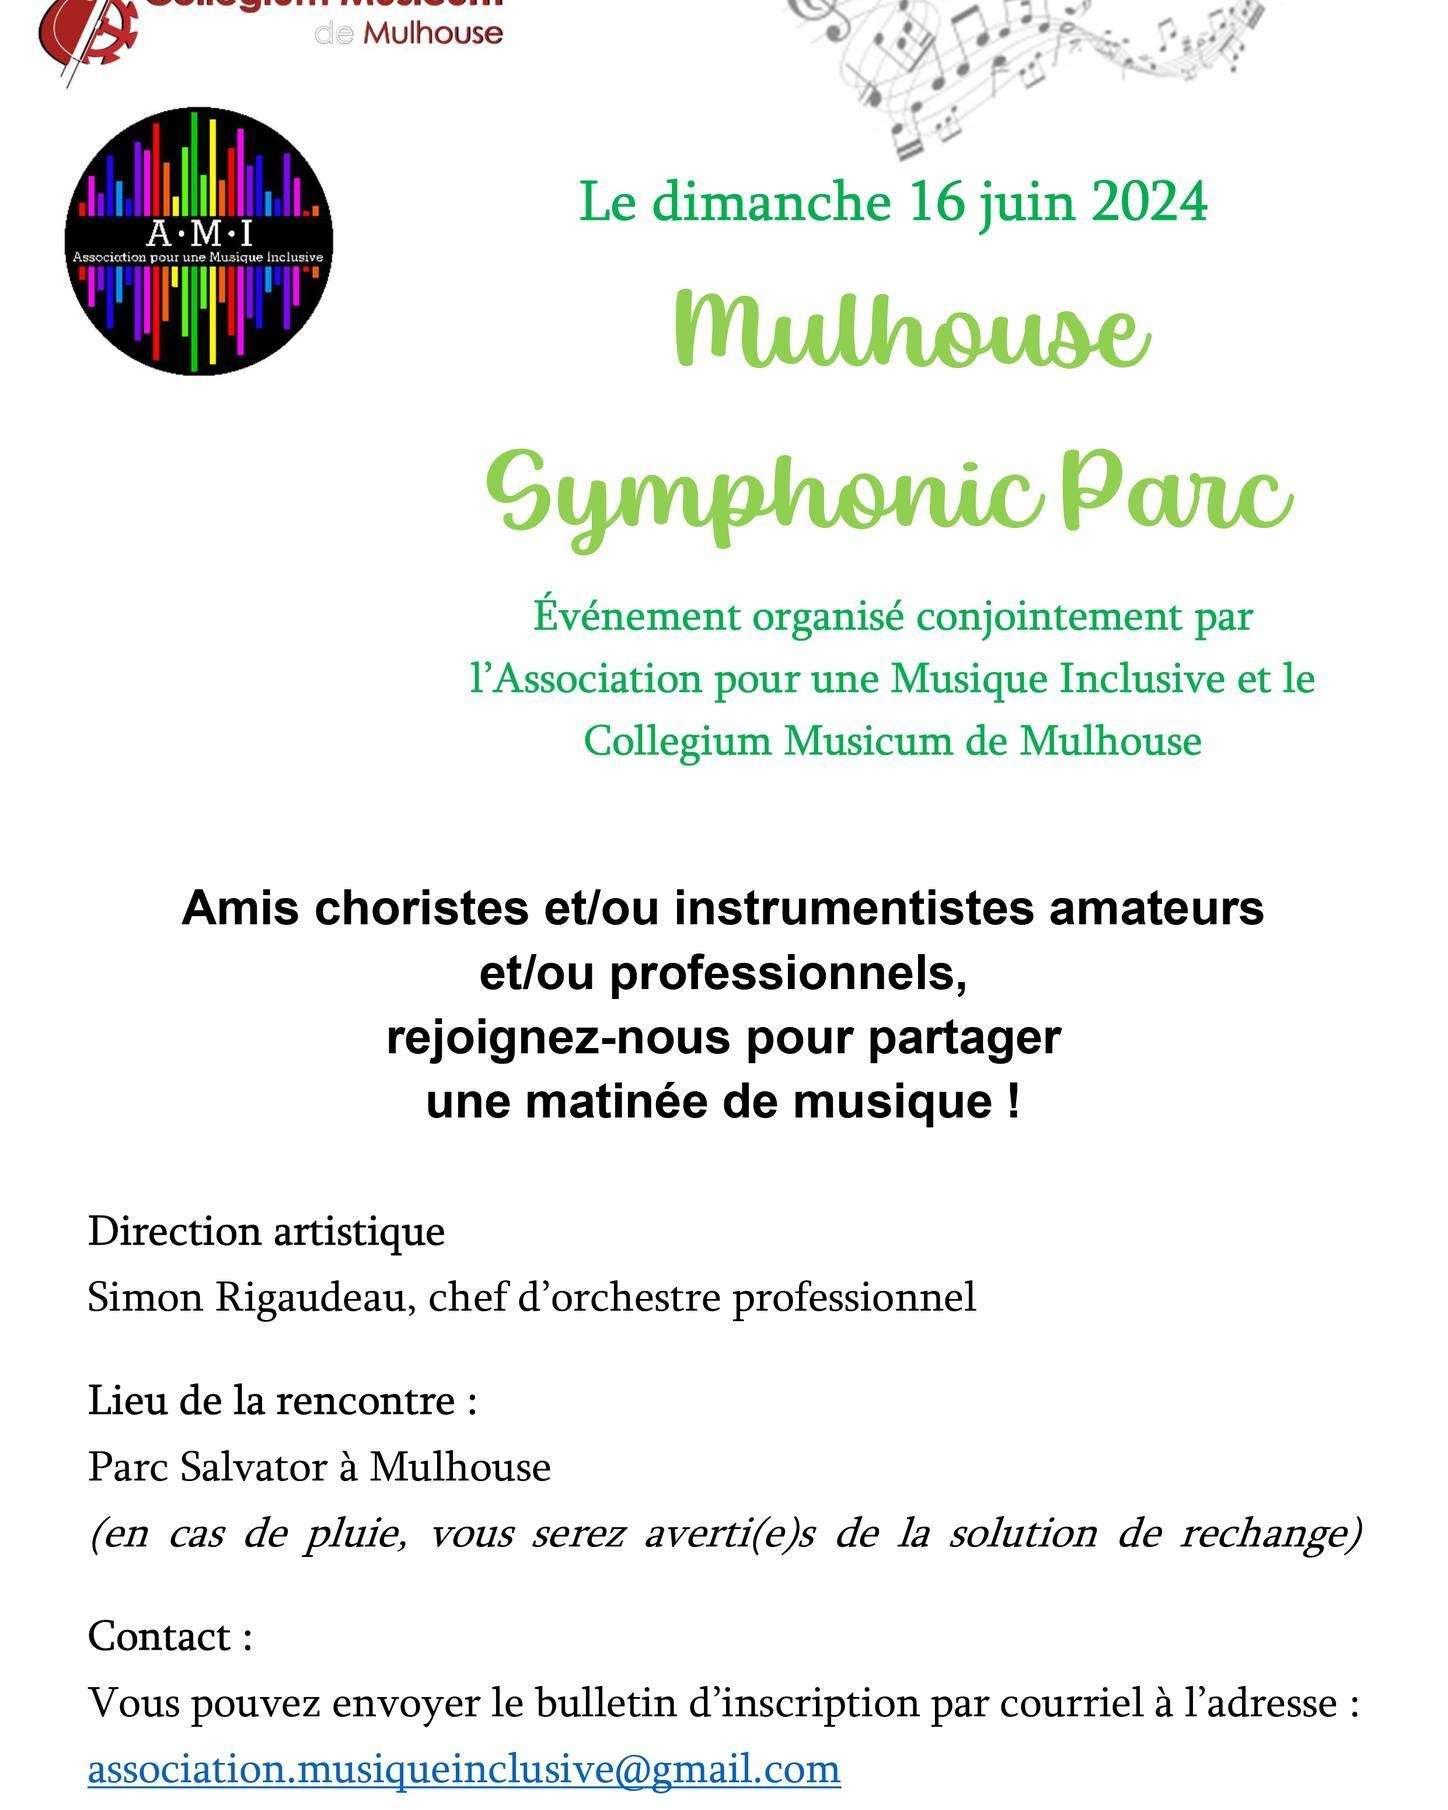 mulhouse_symphonic_parc.jpg